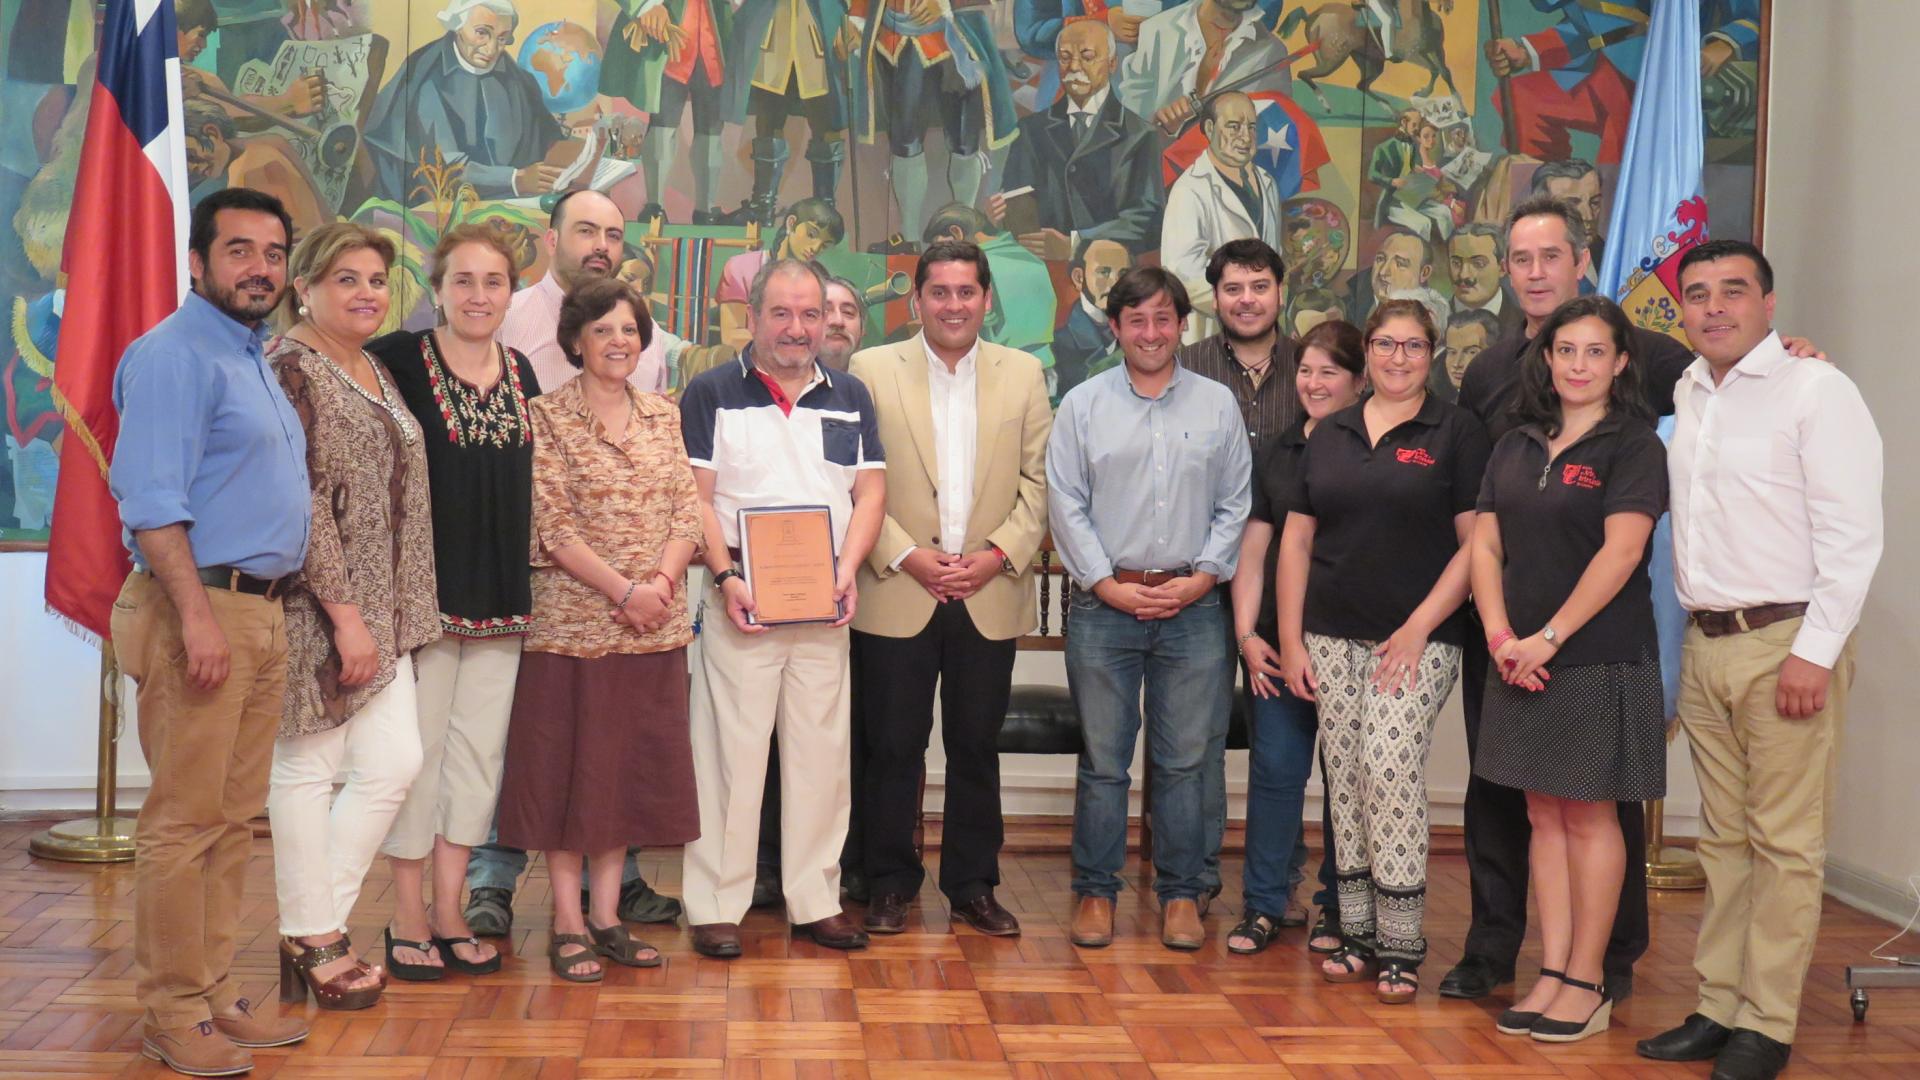 Evento llevado a cabo en el Salón de Honor de la I. Municipalidad de Linares.